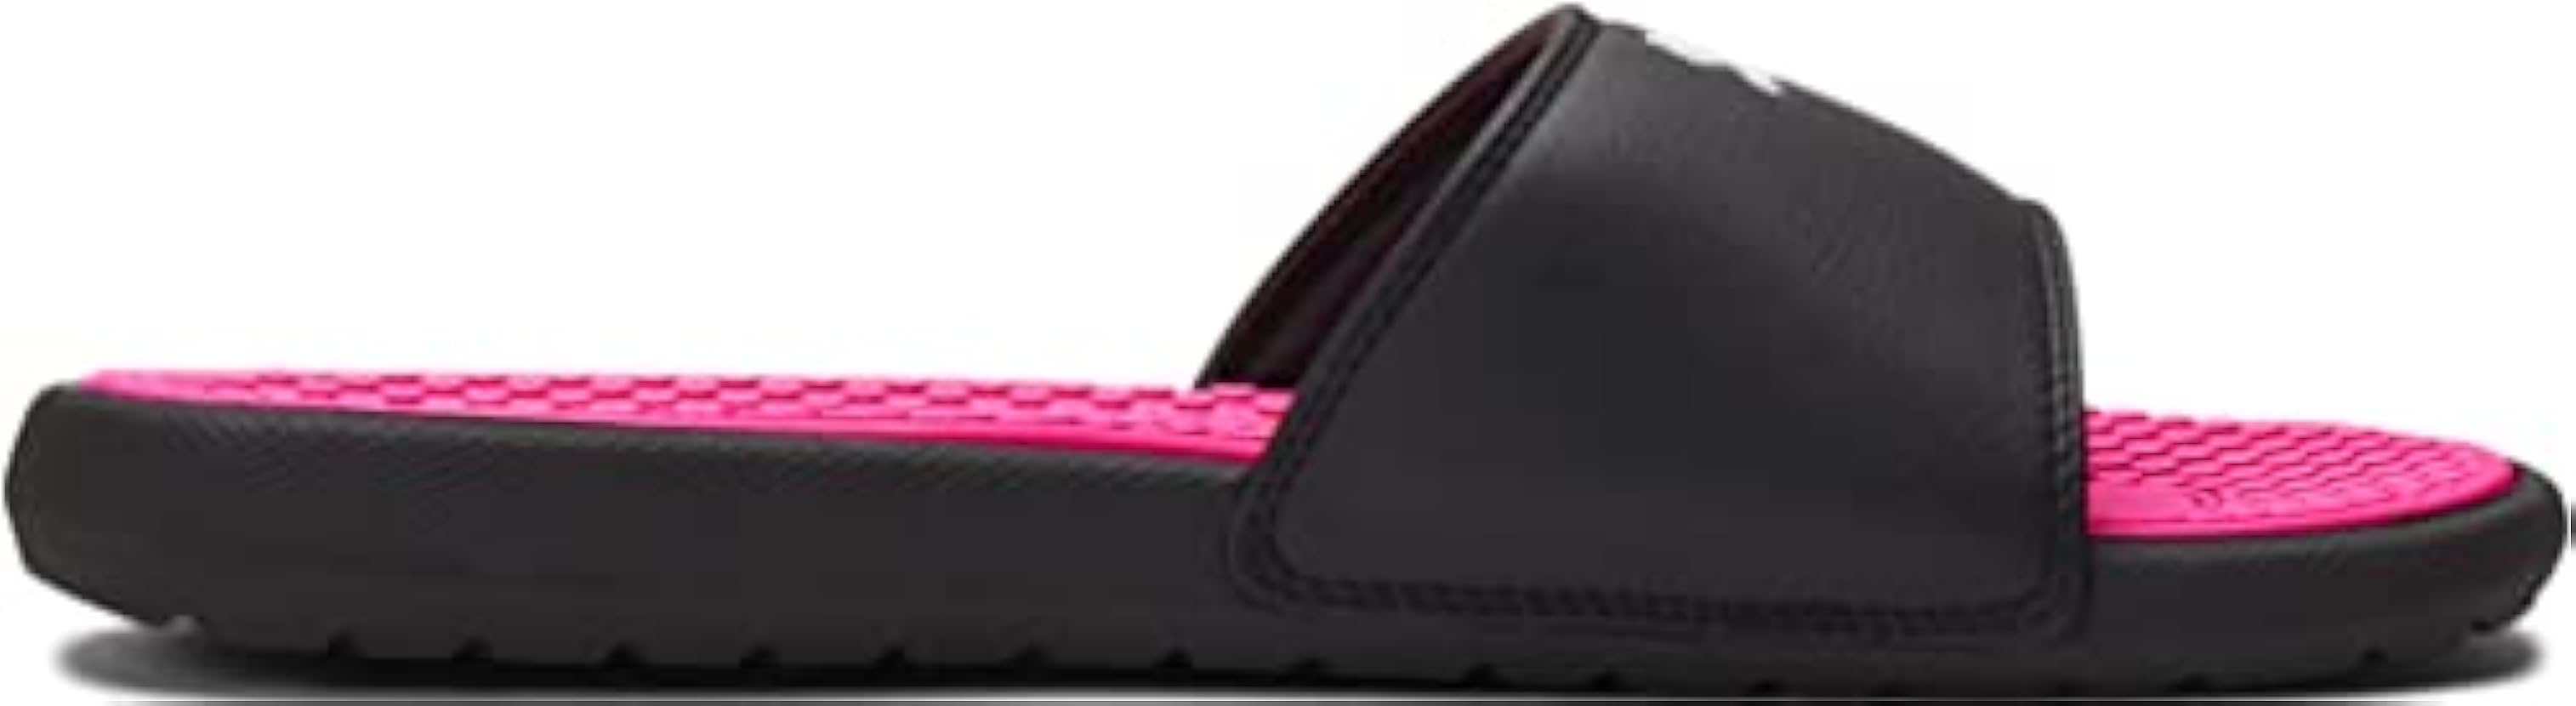 PUMA Sandalo da donna Cool Cat Slide, nero, 37.5 EU 860